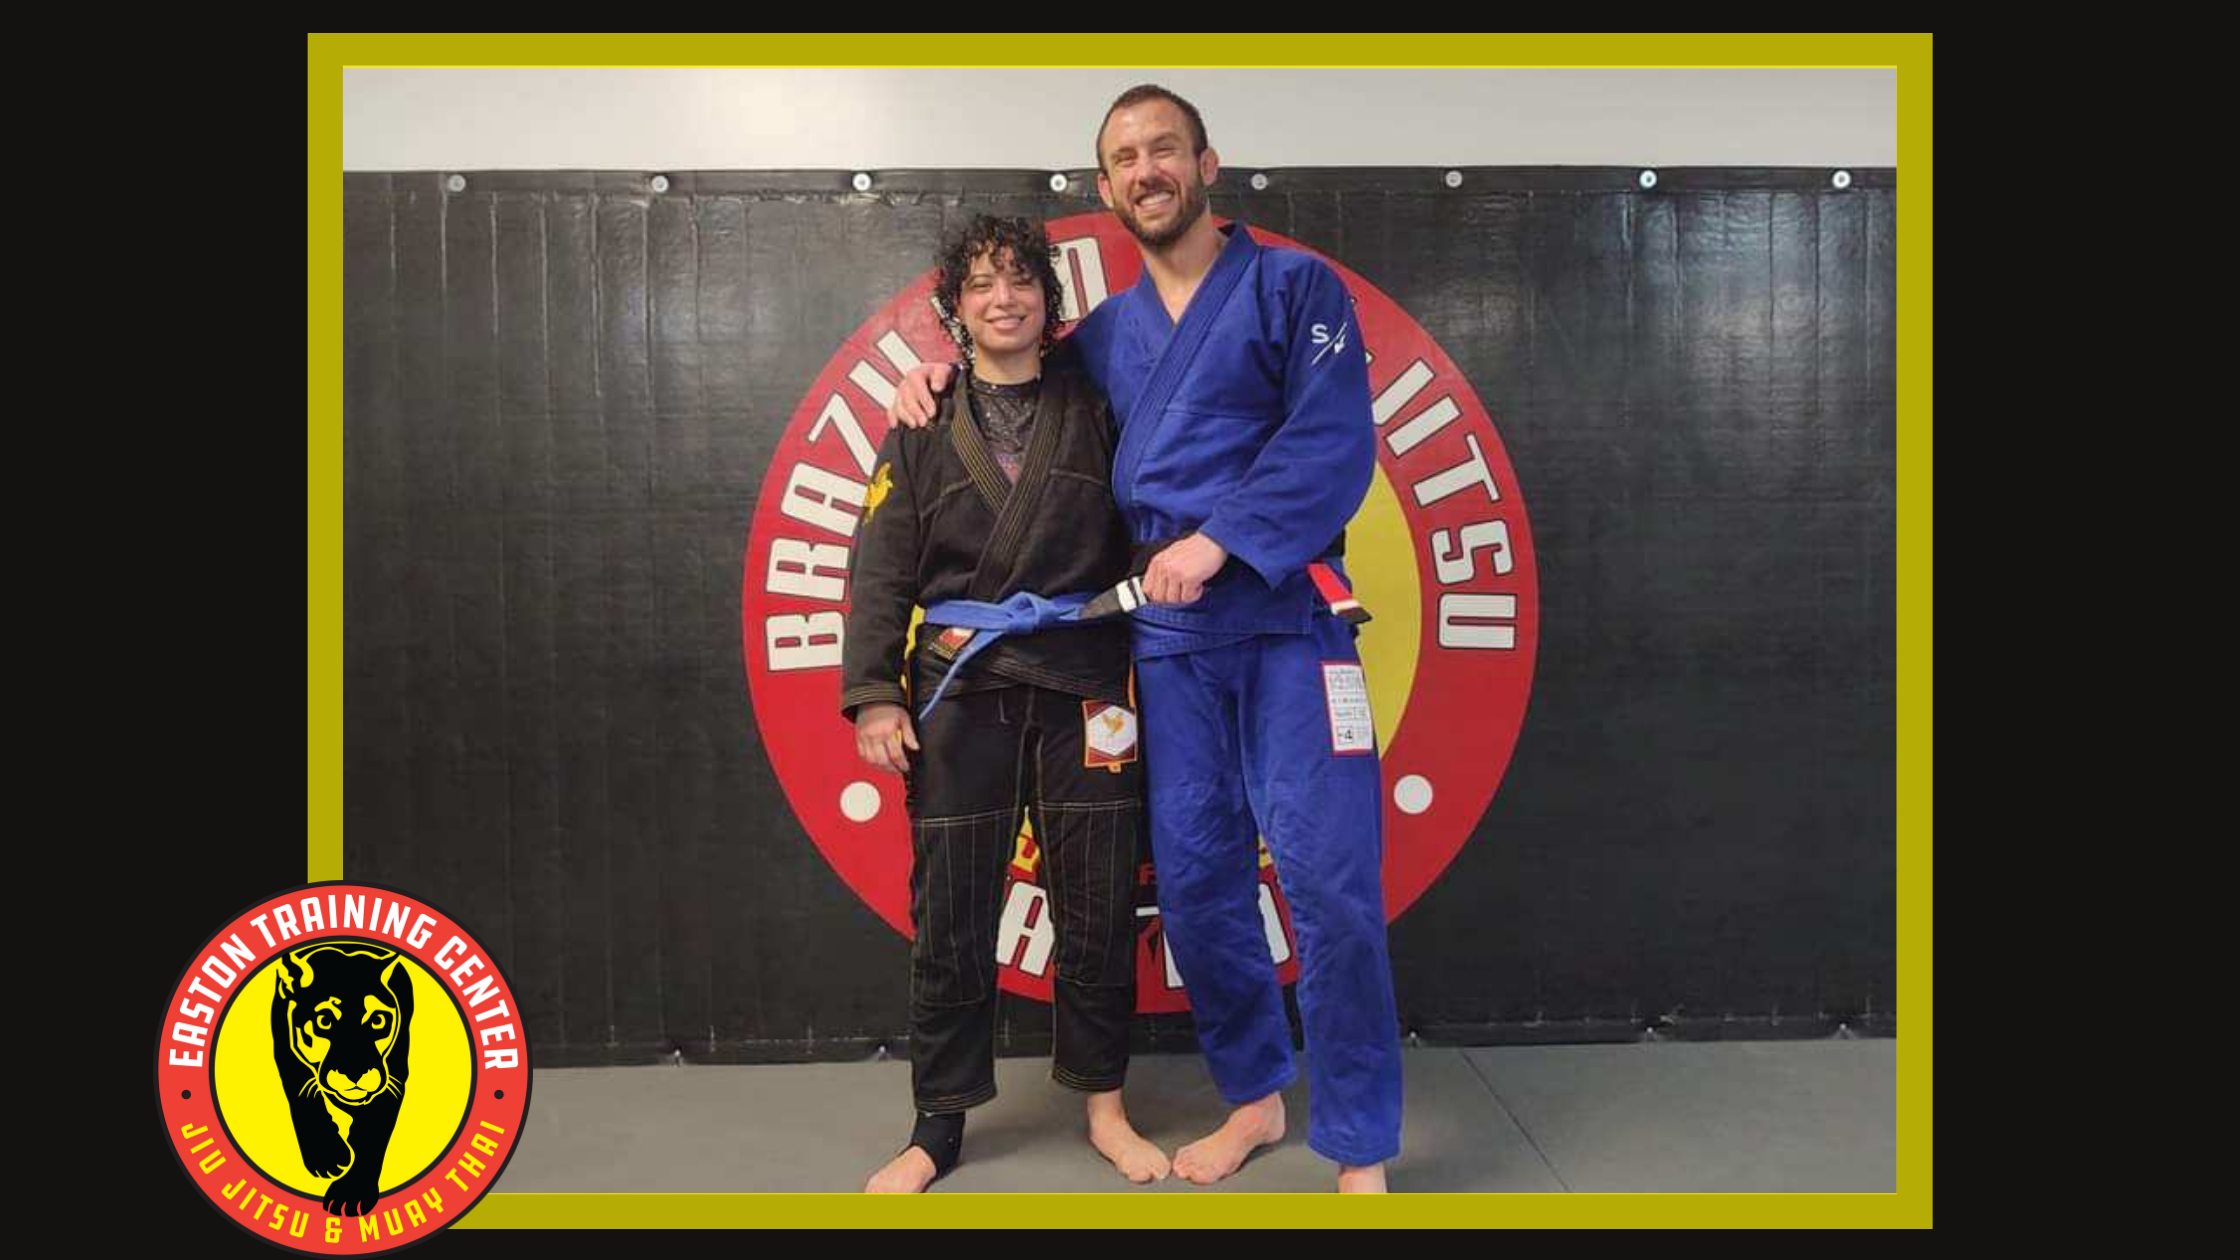 bjj blue belt poses with bjj black belt instructor